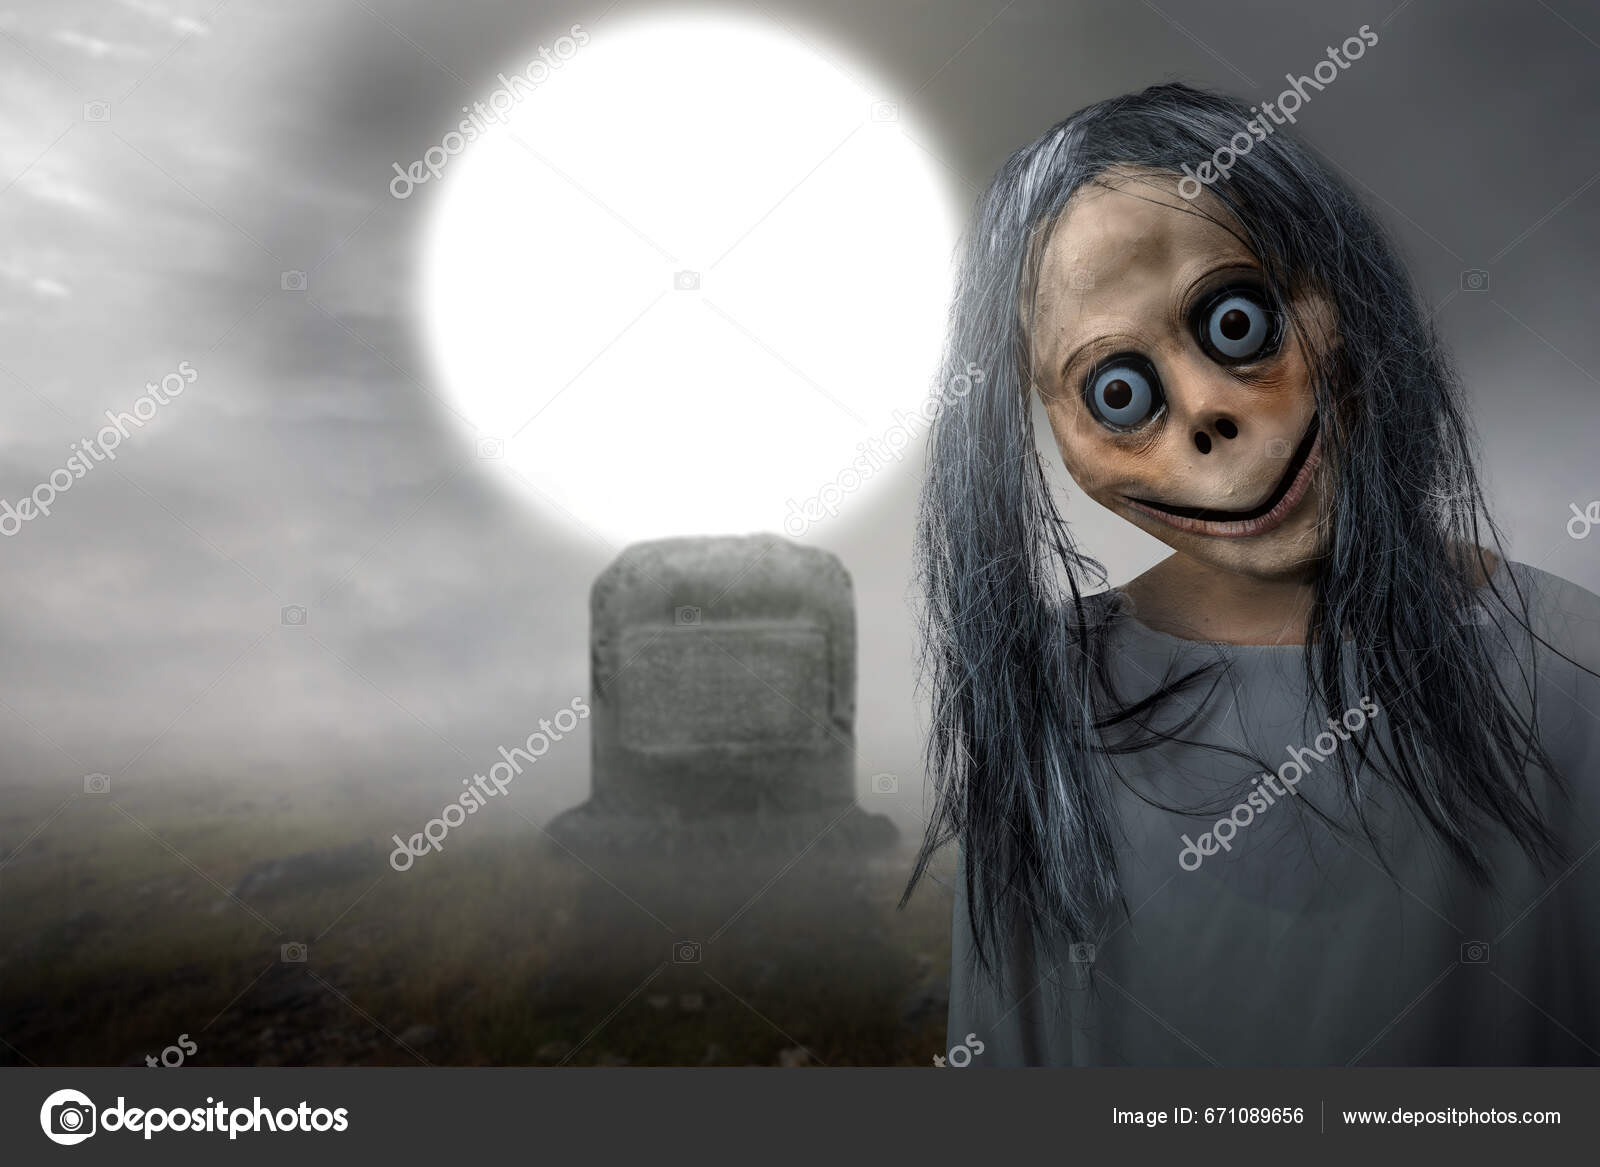 Momo Assustador Cemitério Com Fundo Cena Noturna Cara Assustadora Para  fotos, imagens de © leolintang #671089656